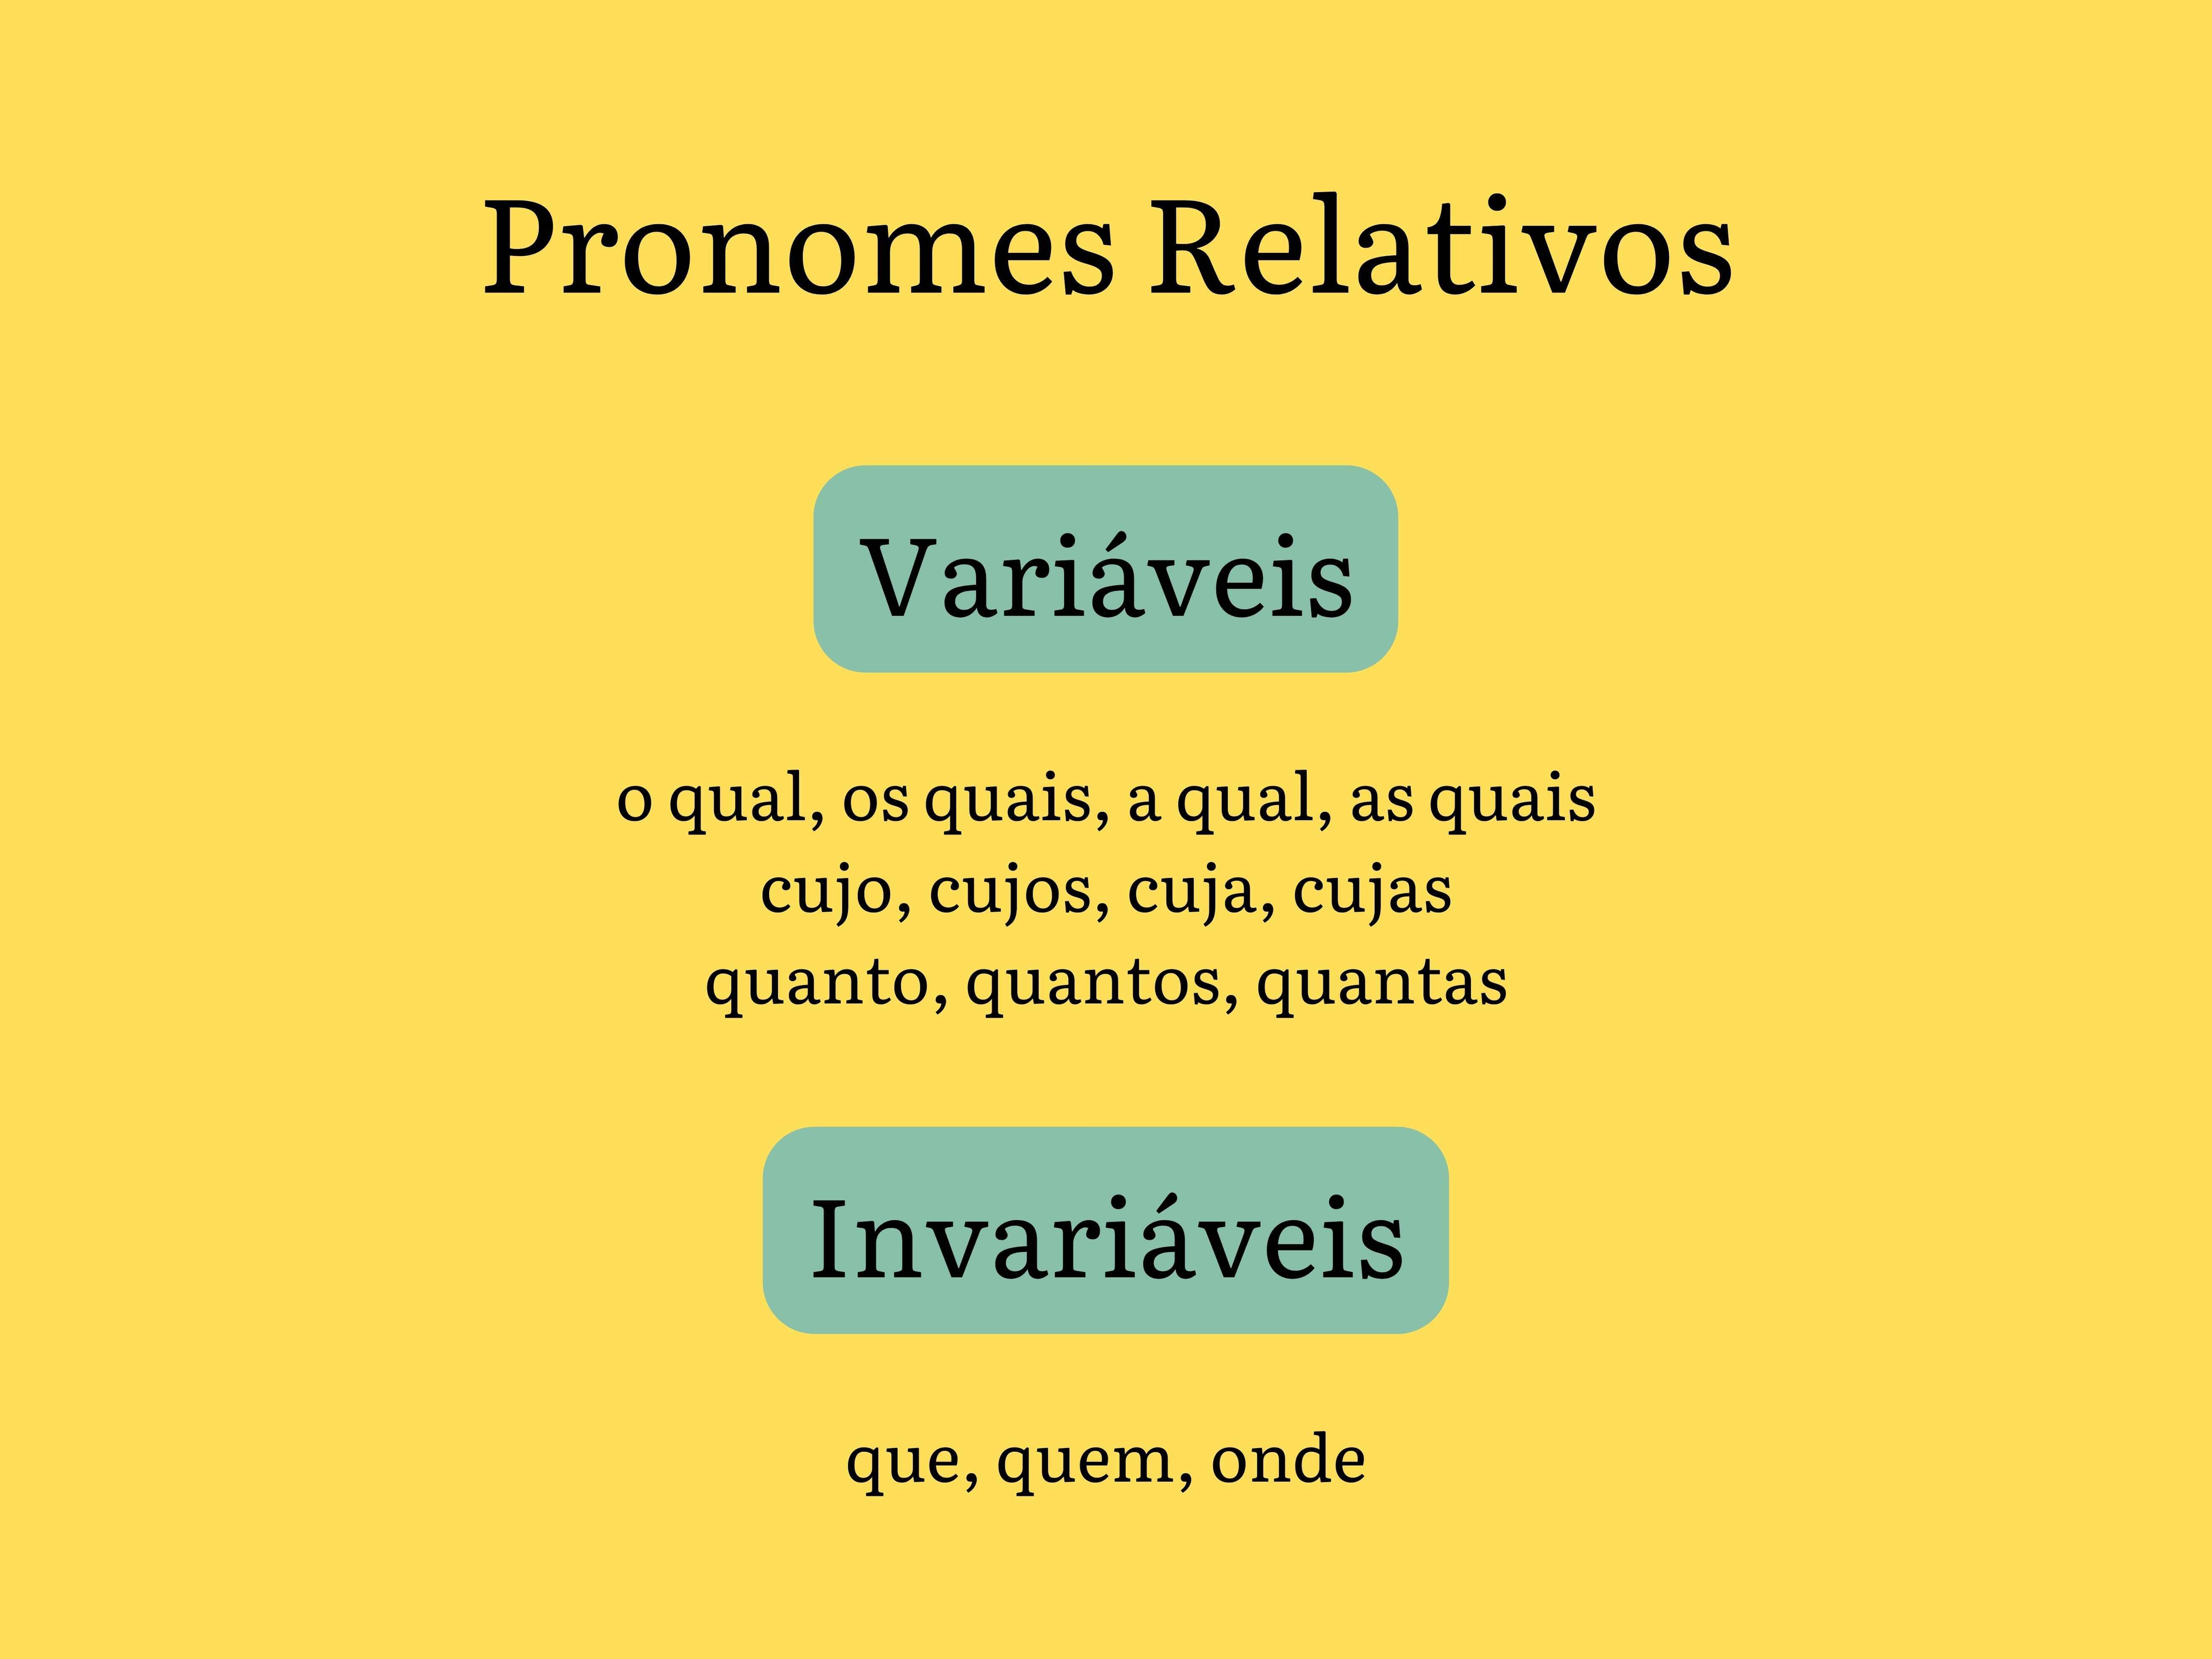 Lista e classificação dos pronomes relativos